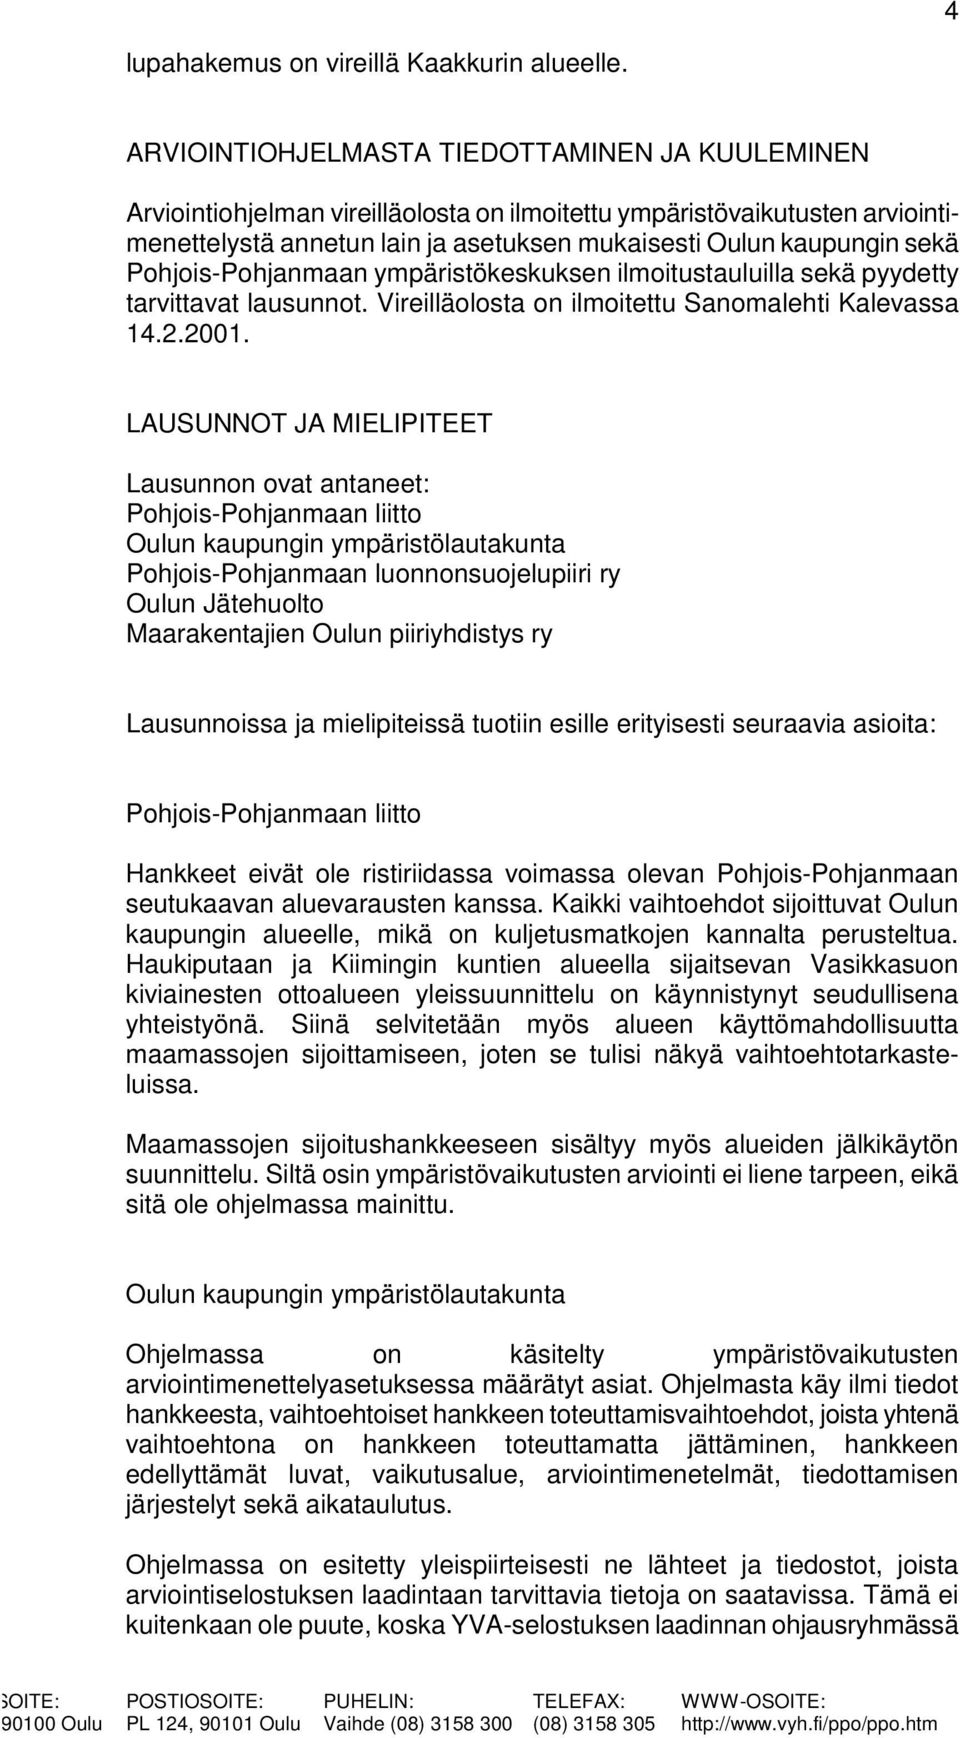 Pohjois-Pohjanmaan ympäristökeskuksen ilmoitustauluilla sekä pyydetty tarvittavat lausunnot. Vireilläolosta on ilmoitettu Sanomalehti Kalevassa 14.2.2001.